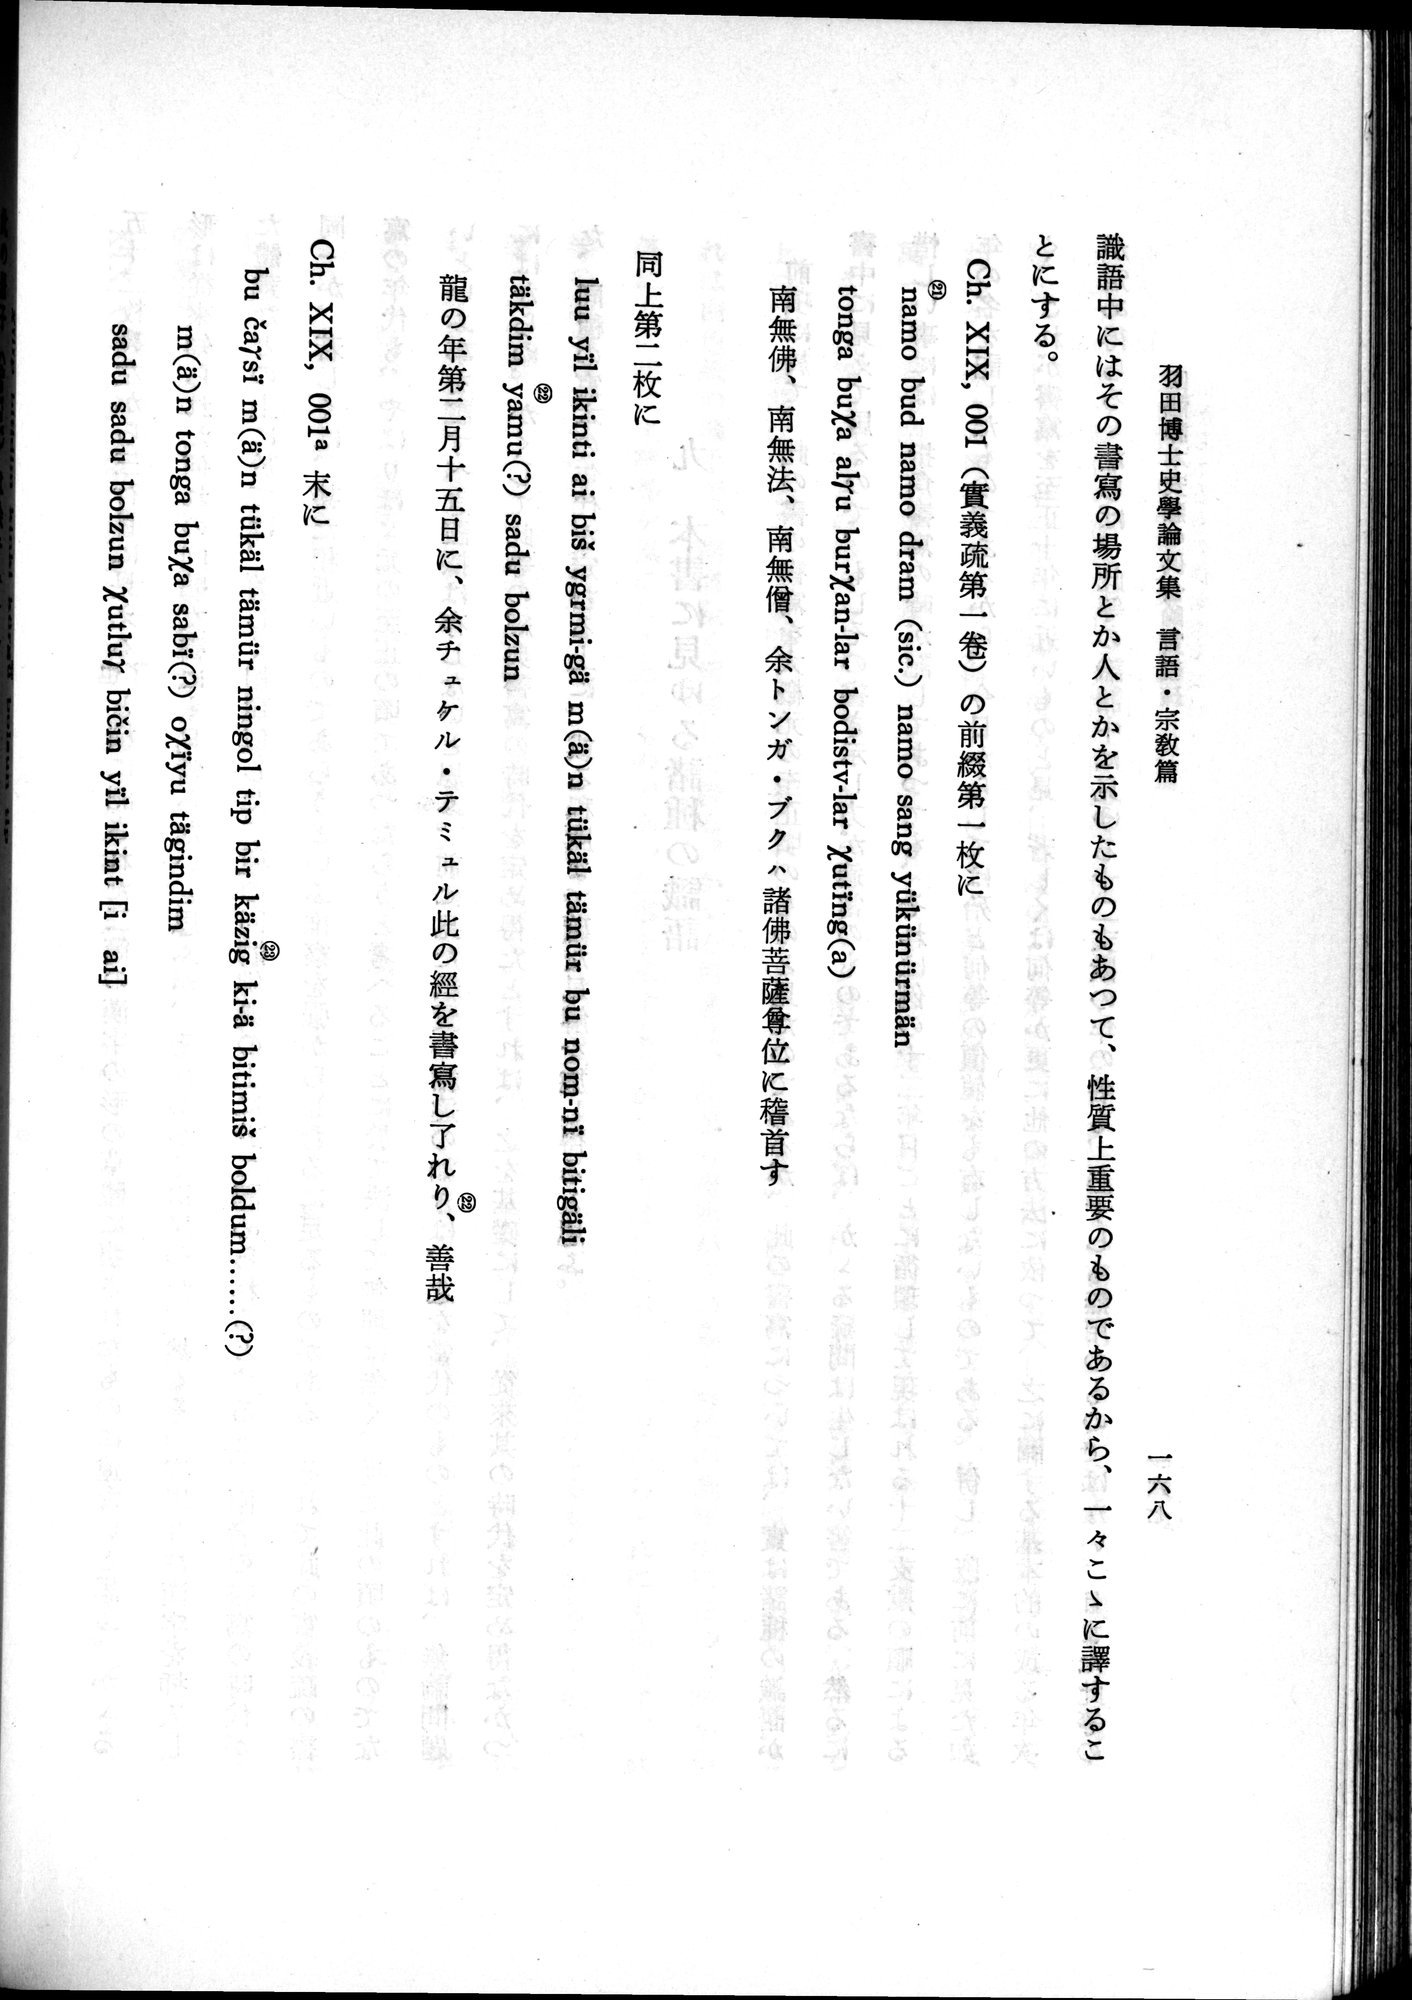 羽田博士史学論文集 : vol.2 / 230 ページ（白黒高解像度画像）